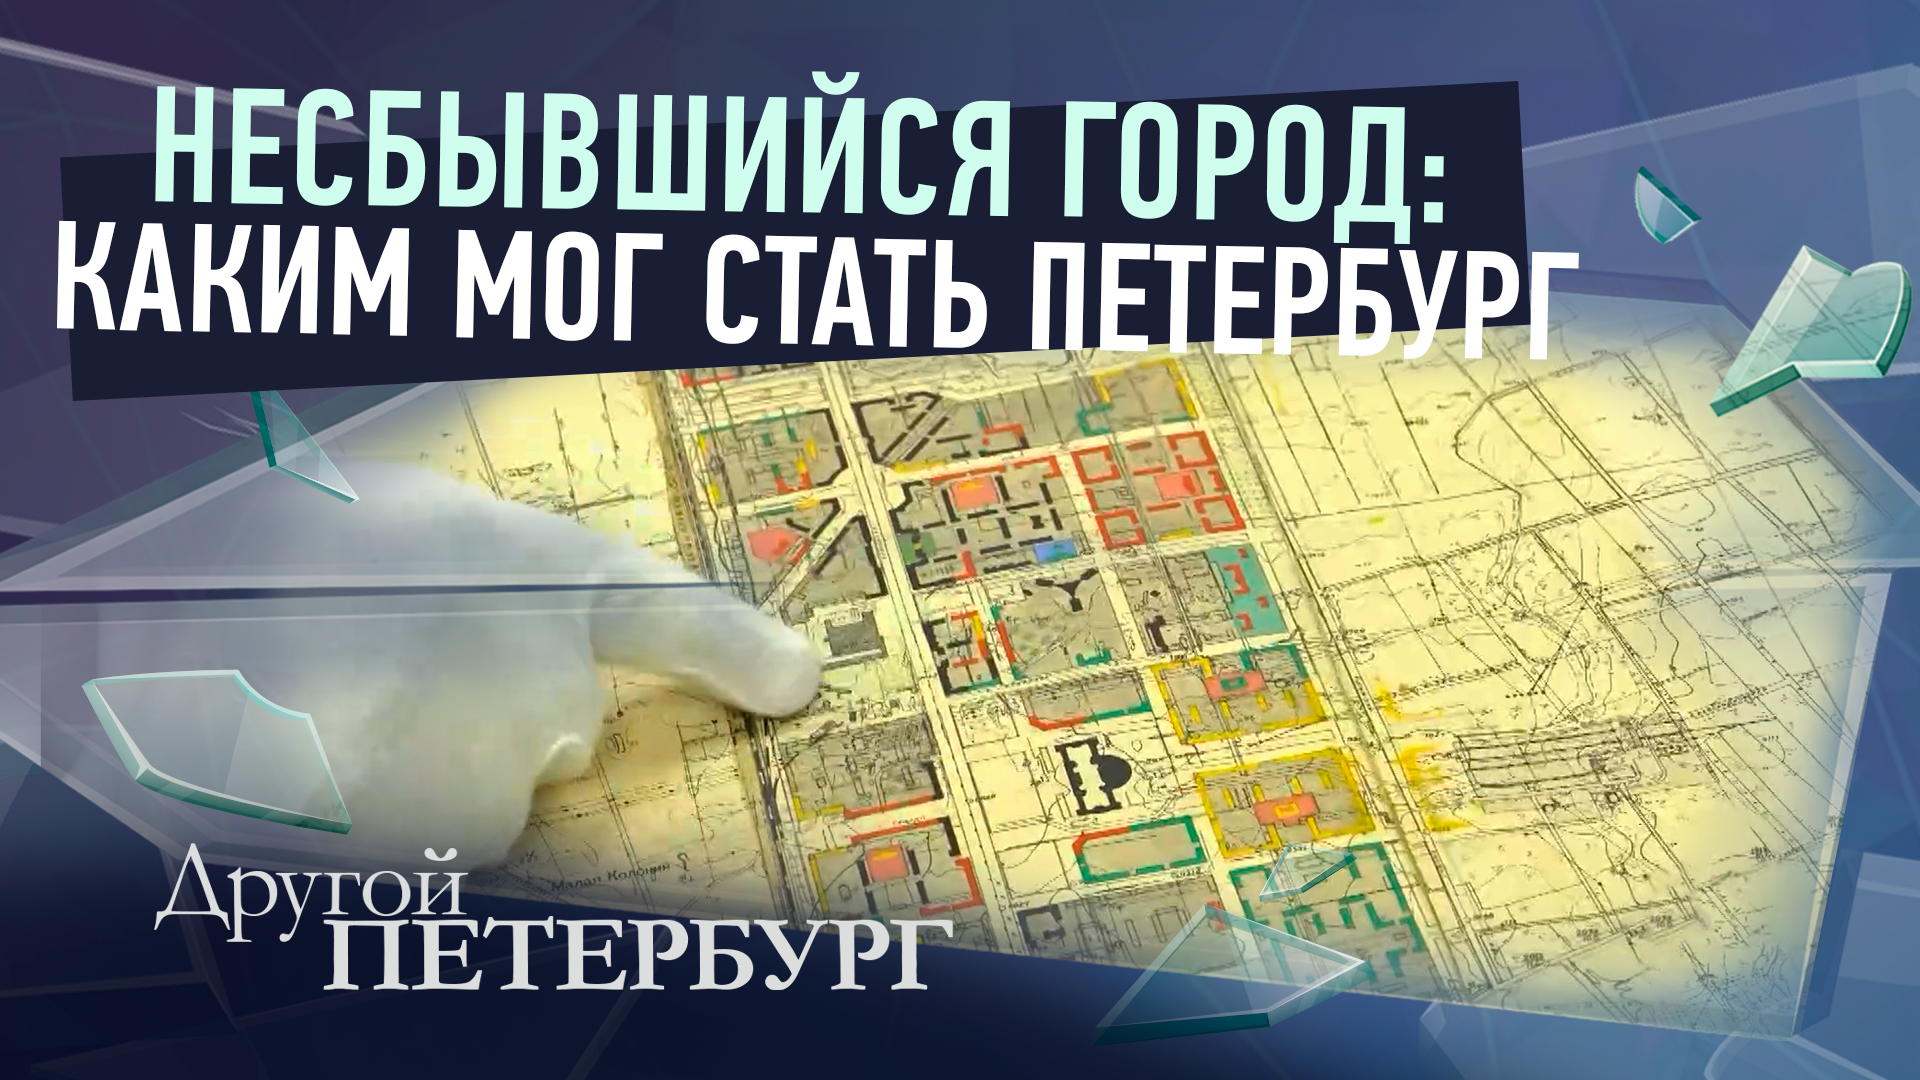 Несбывшийся город: каким мог стать Петербург